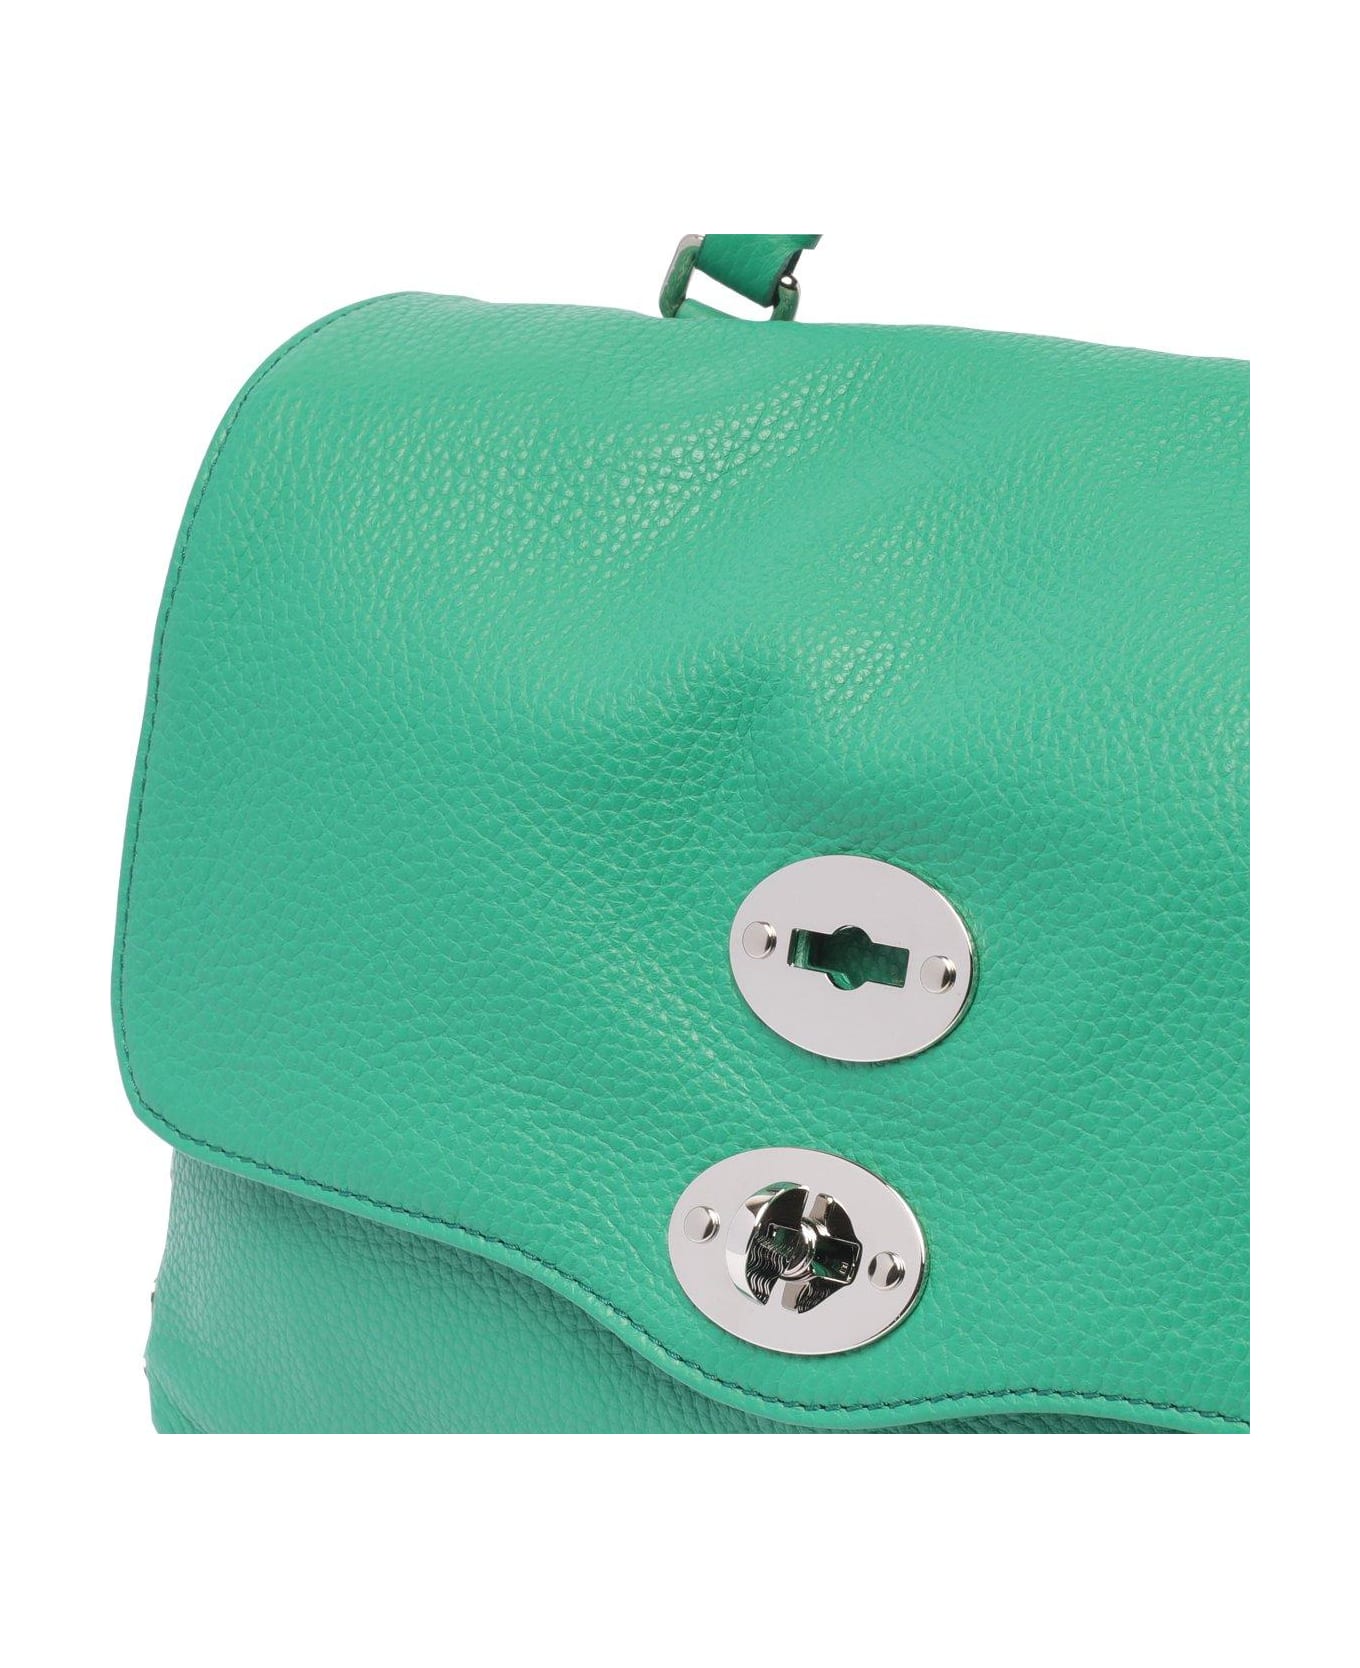 Zanellato Small Postina Foldover Top Tote Bag - Green Malachite